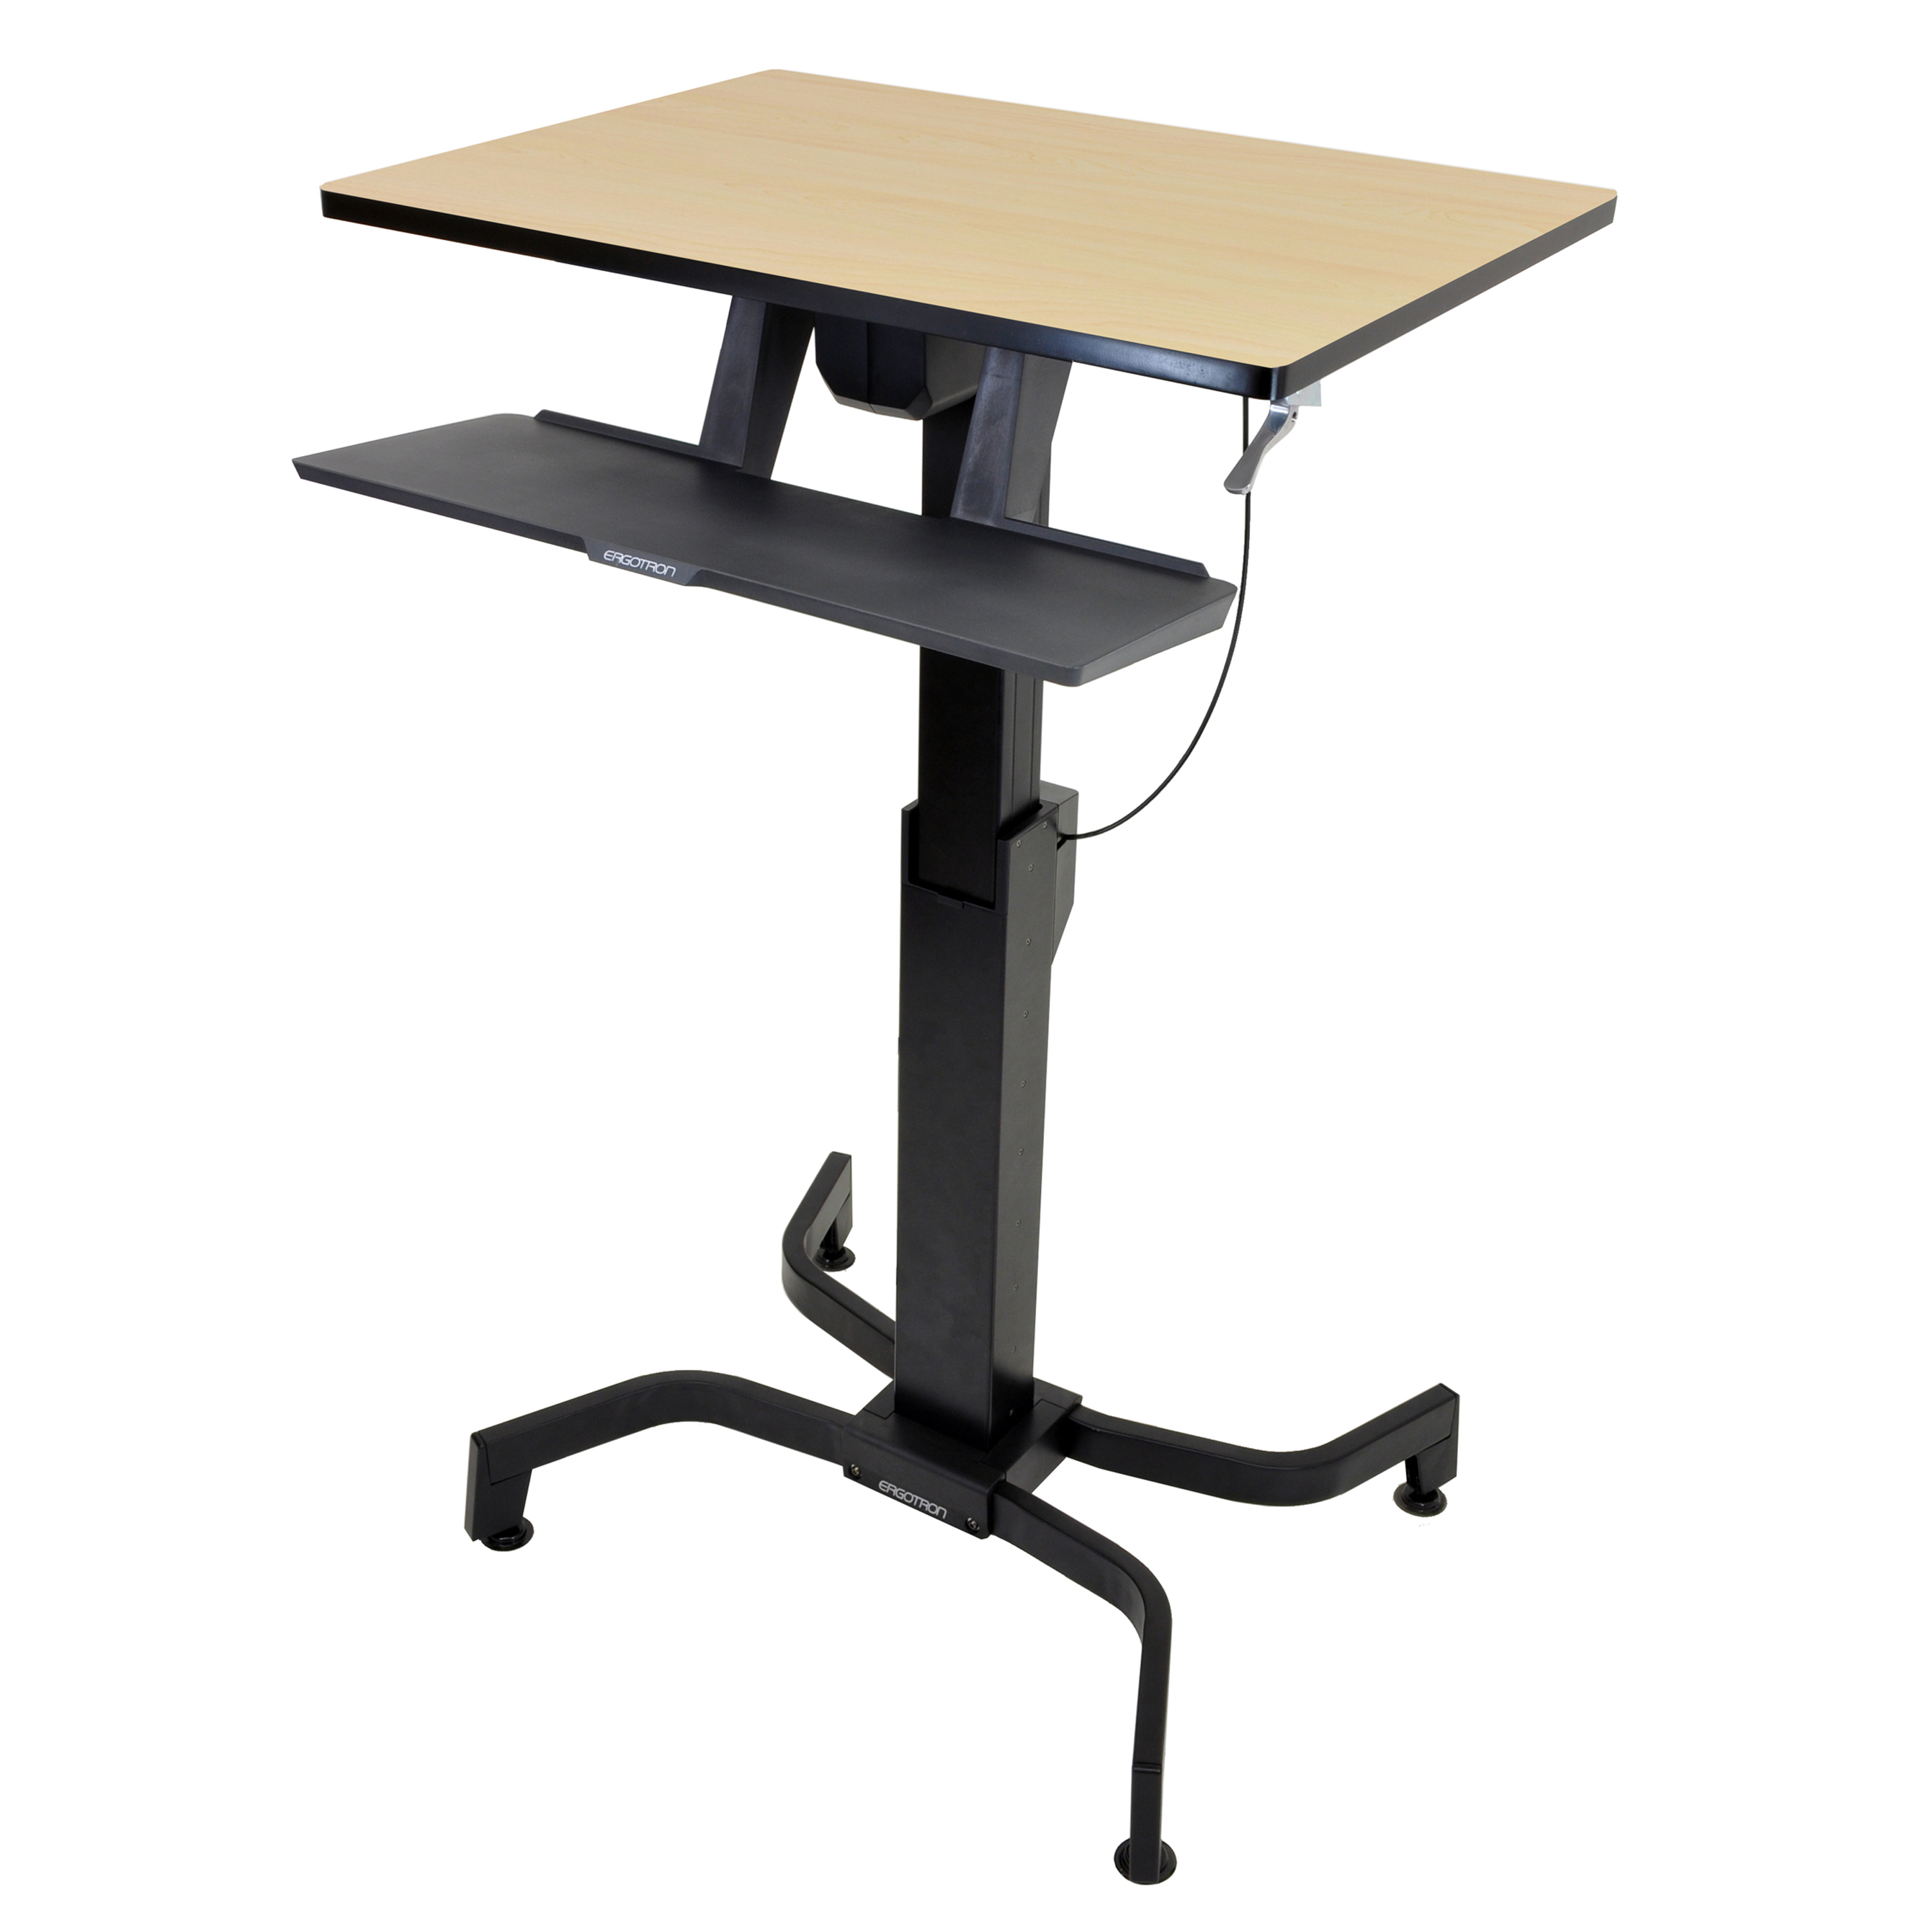 WorkFit-PD tavolo per lavorare seduti o in piedi